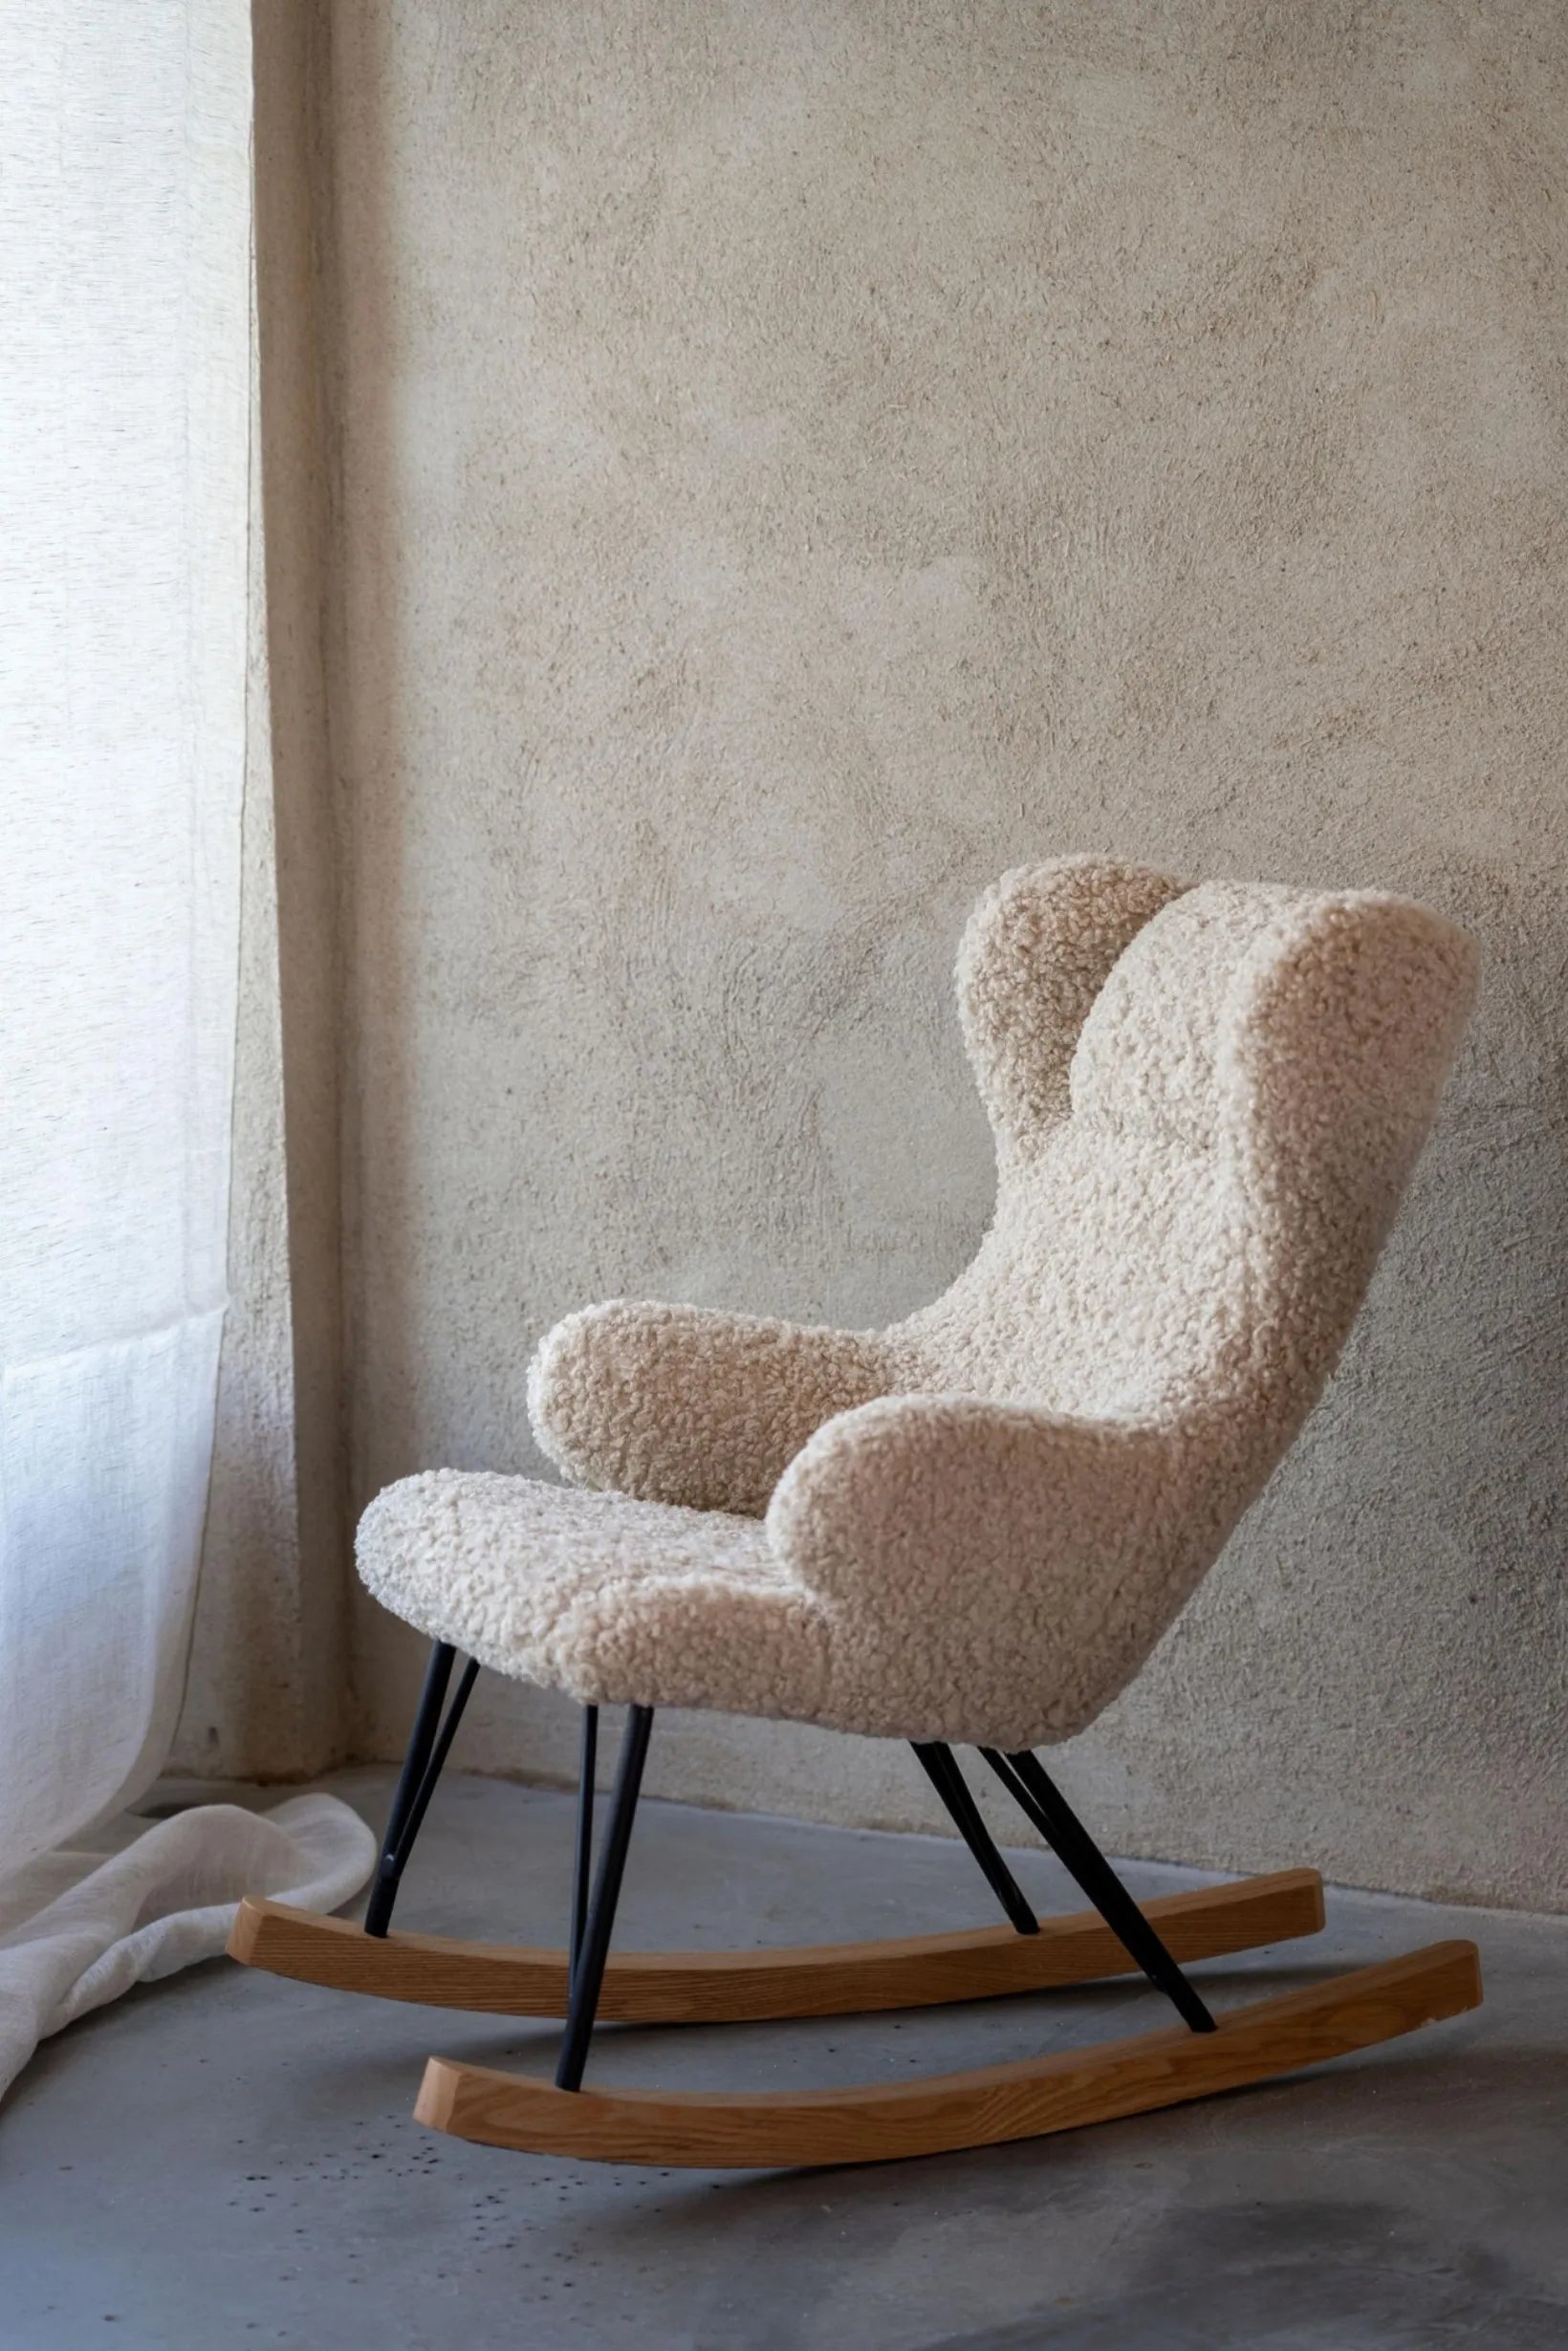 Luxury Rocking Chair Kids Teddy Sheep - Quax 